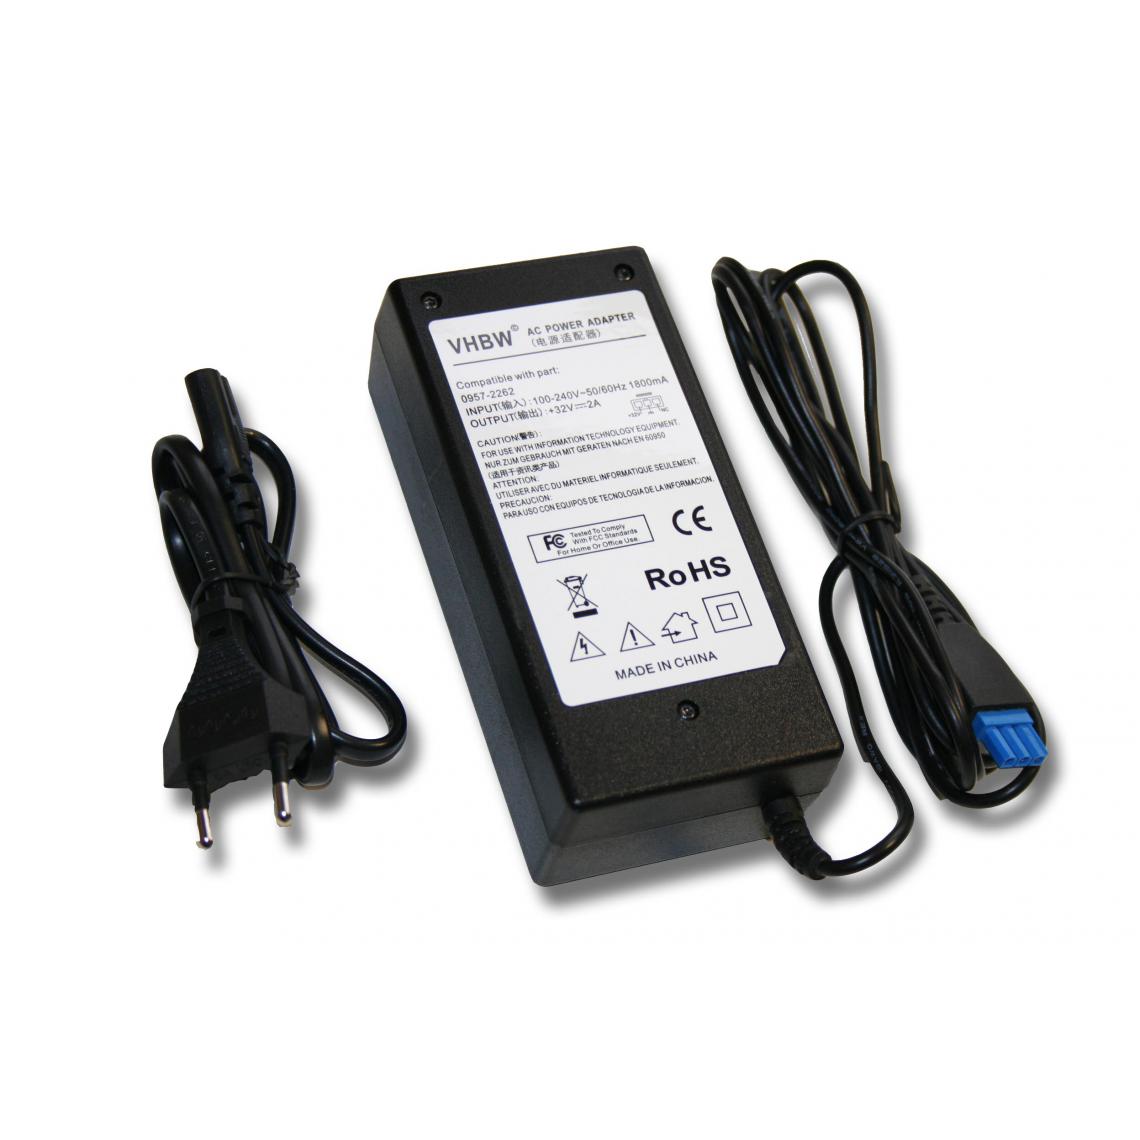 Vhbw - vhbw Imprimante Adaptateur bloc d'alimentation Câble d'alimentation Chargeur remplace HP 0957-2093, 0957-2262 pour imprimante - 2,0A - Accessoires alimentation